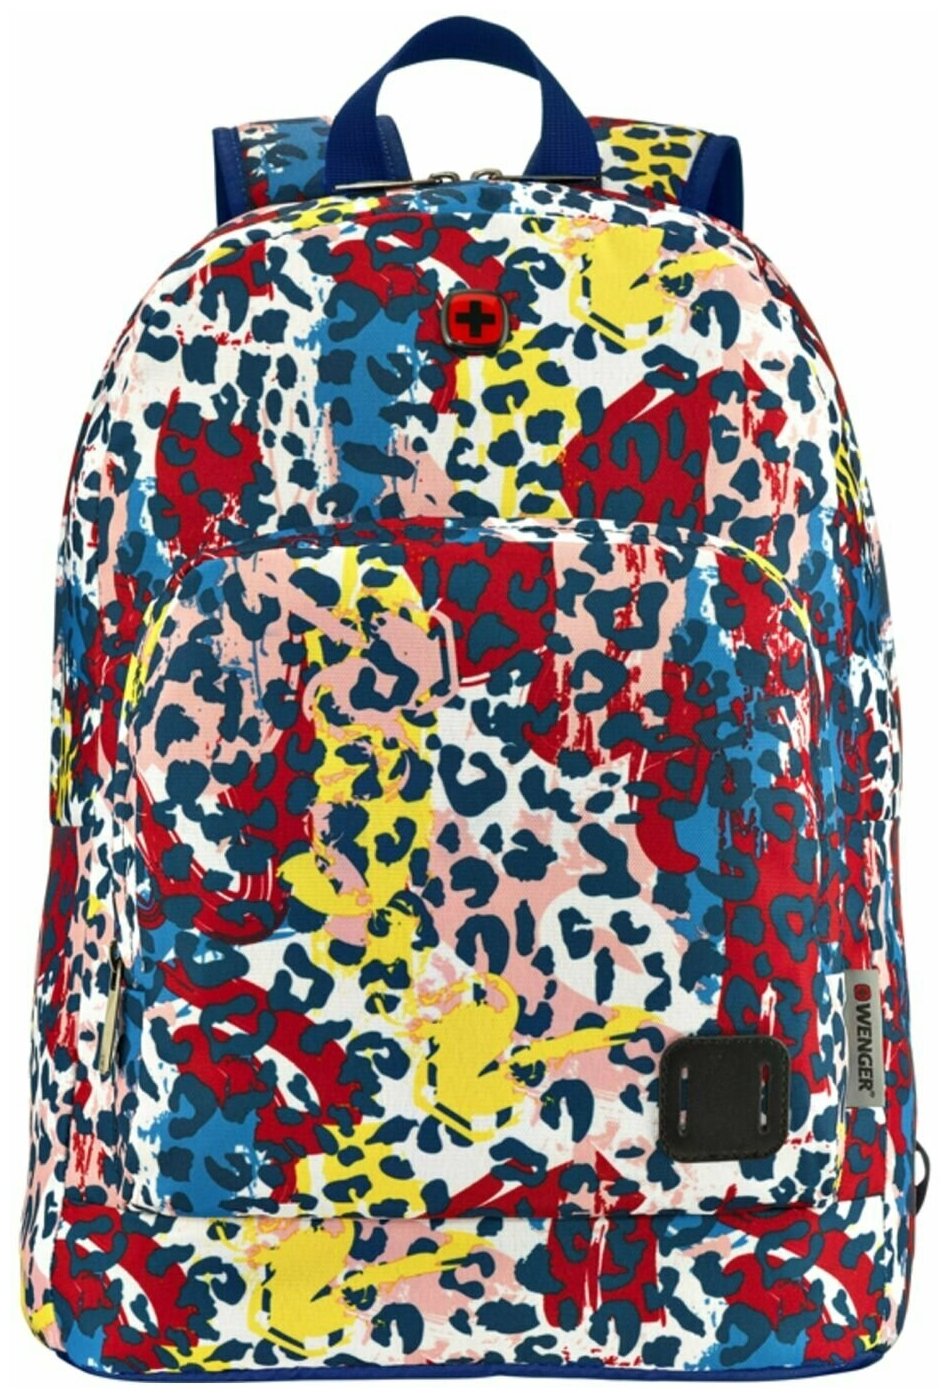 Рюкзак WENGER Crango 16', цветной с леопардовым принтом, полиэстер 600D, 33x22x46 см, 27 л